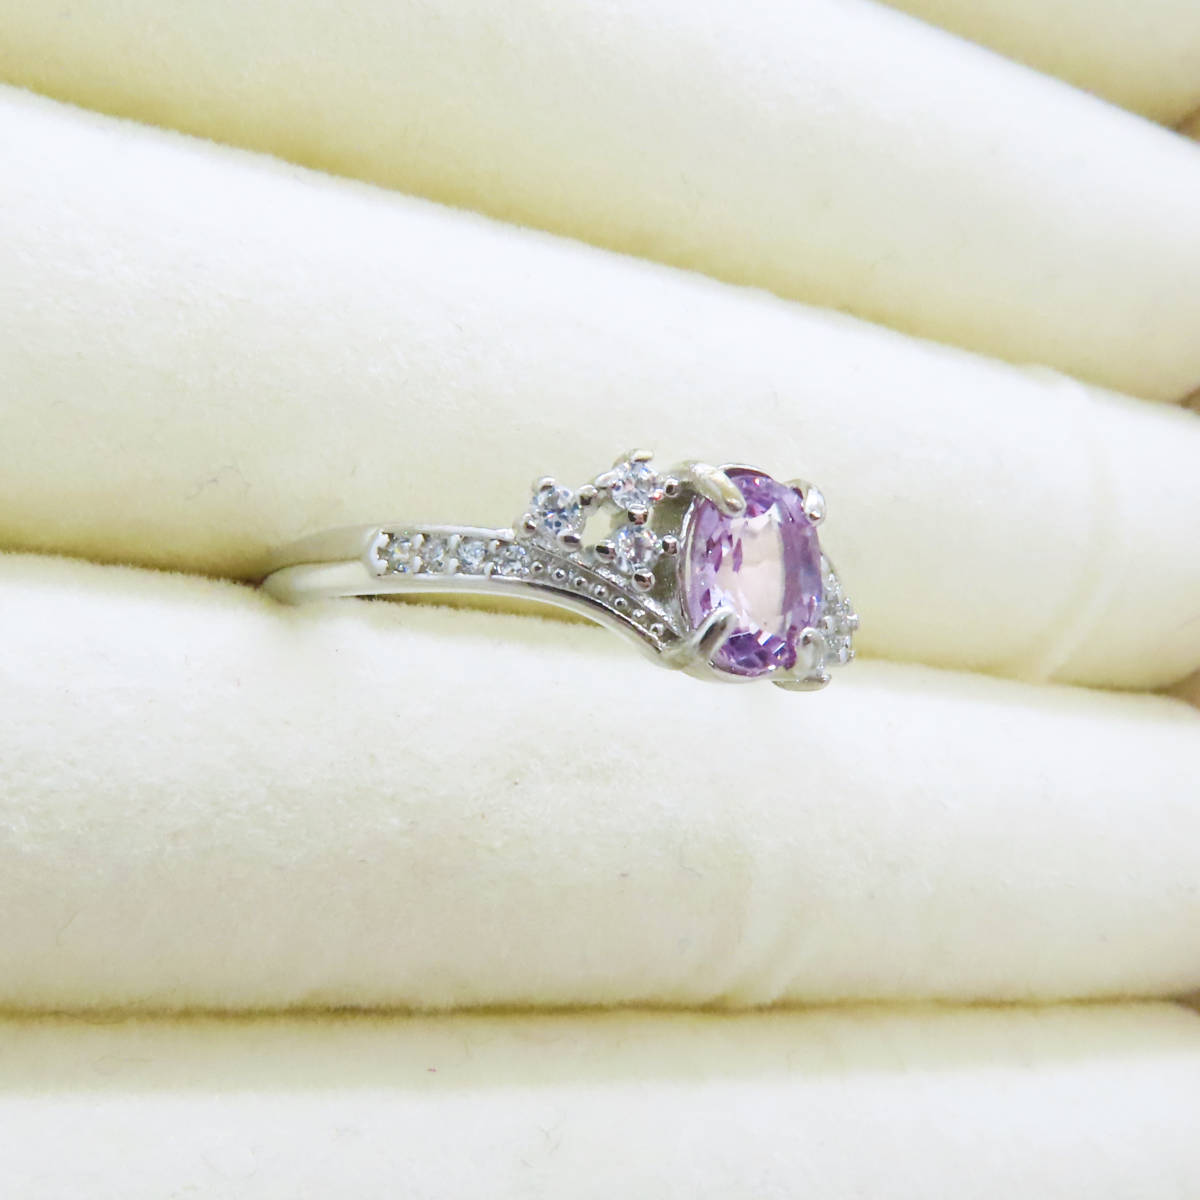 新品 スピネル 尖晶石 ピンクスピネル 925 シルバー ダイヤモンド 指輪